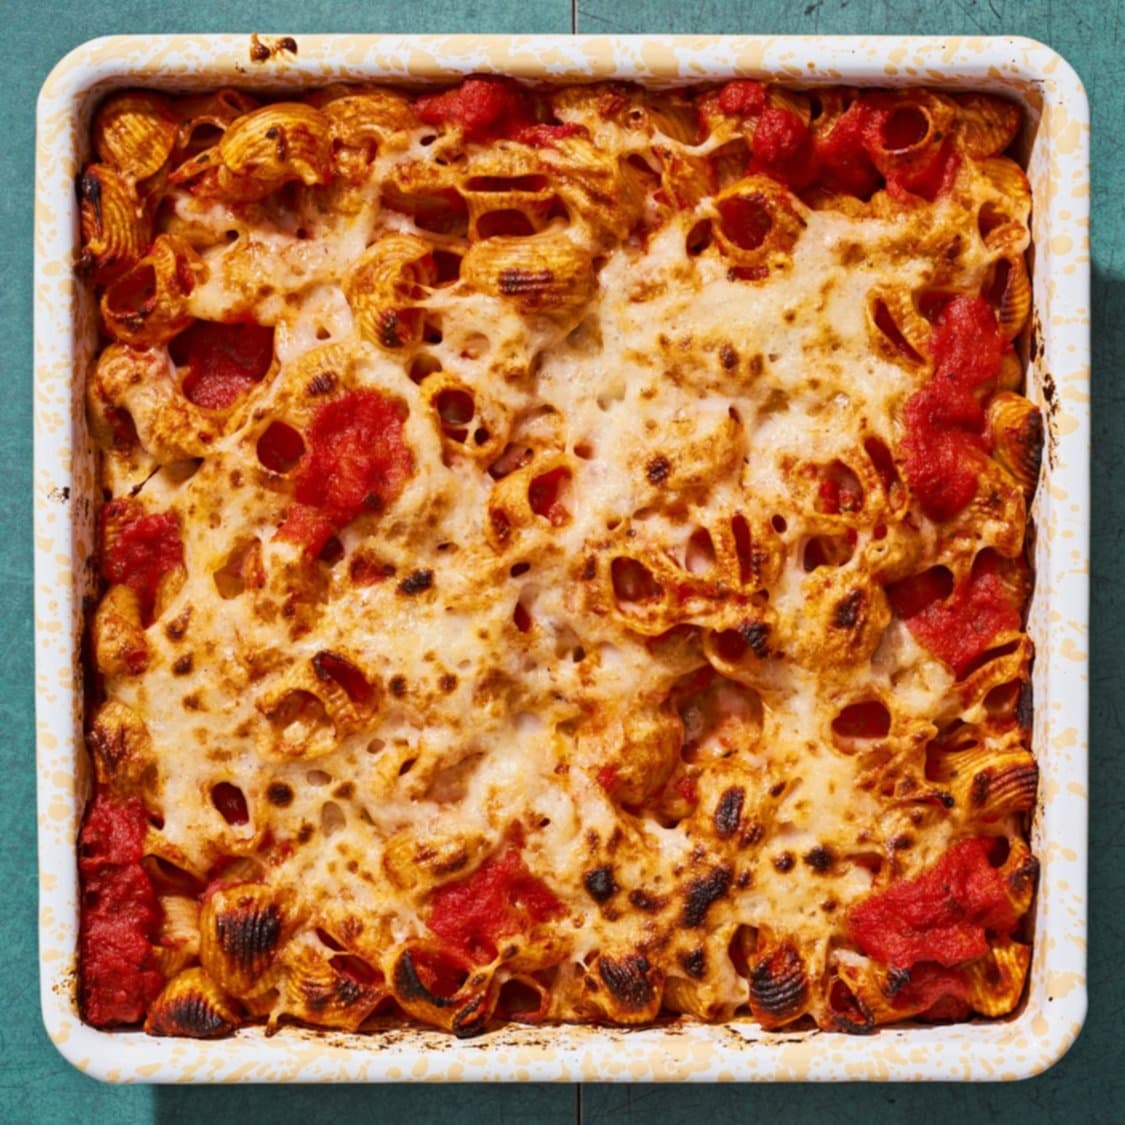 https://fleishigs.com/images/mobile-app/recipes/3730-list-ultimate-vegan-pasta-bake.jpg